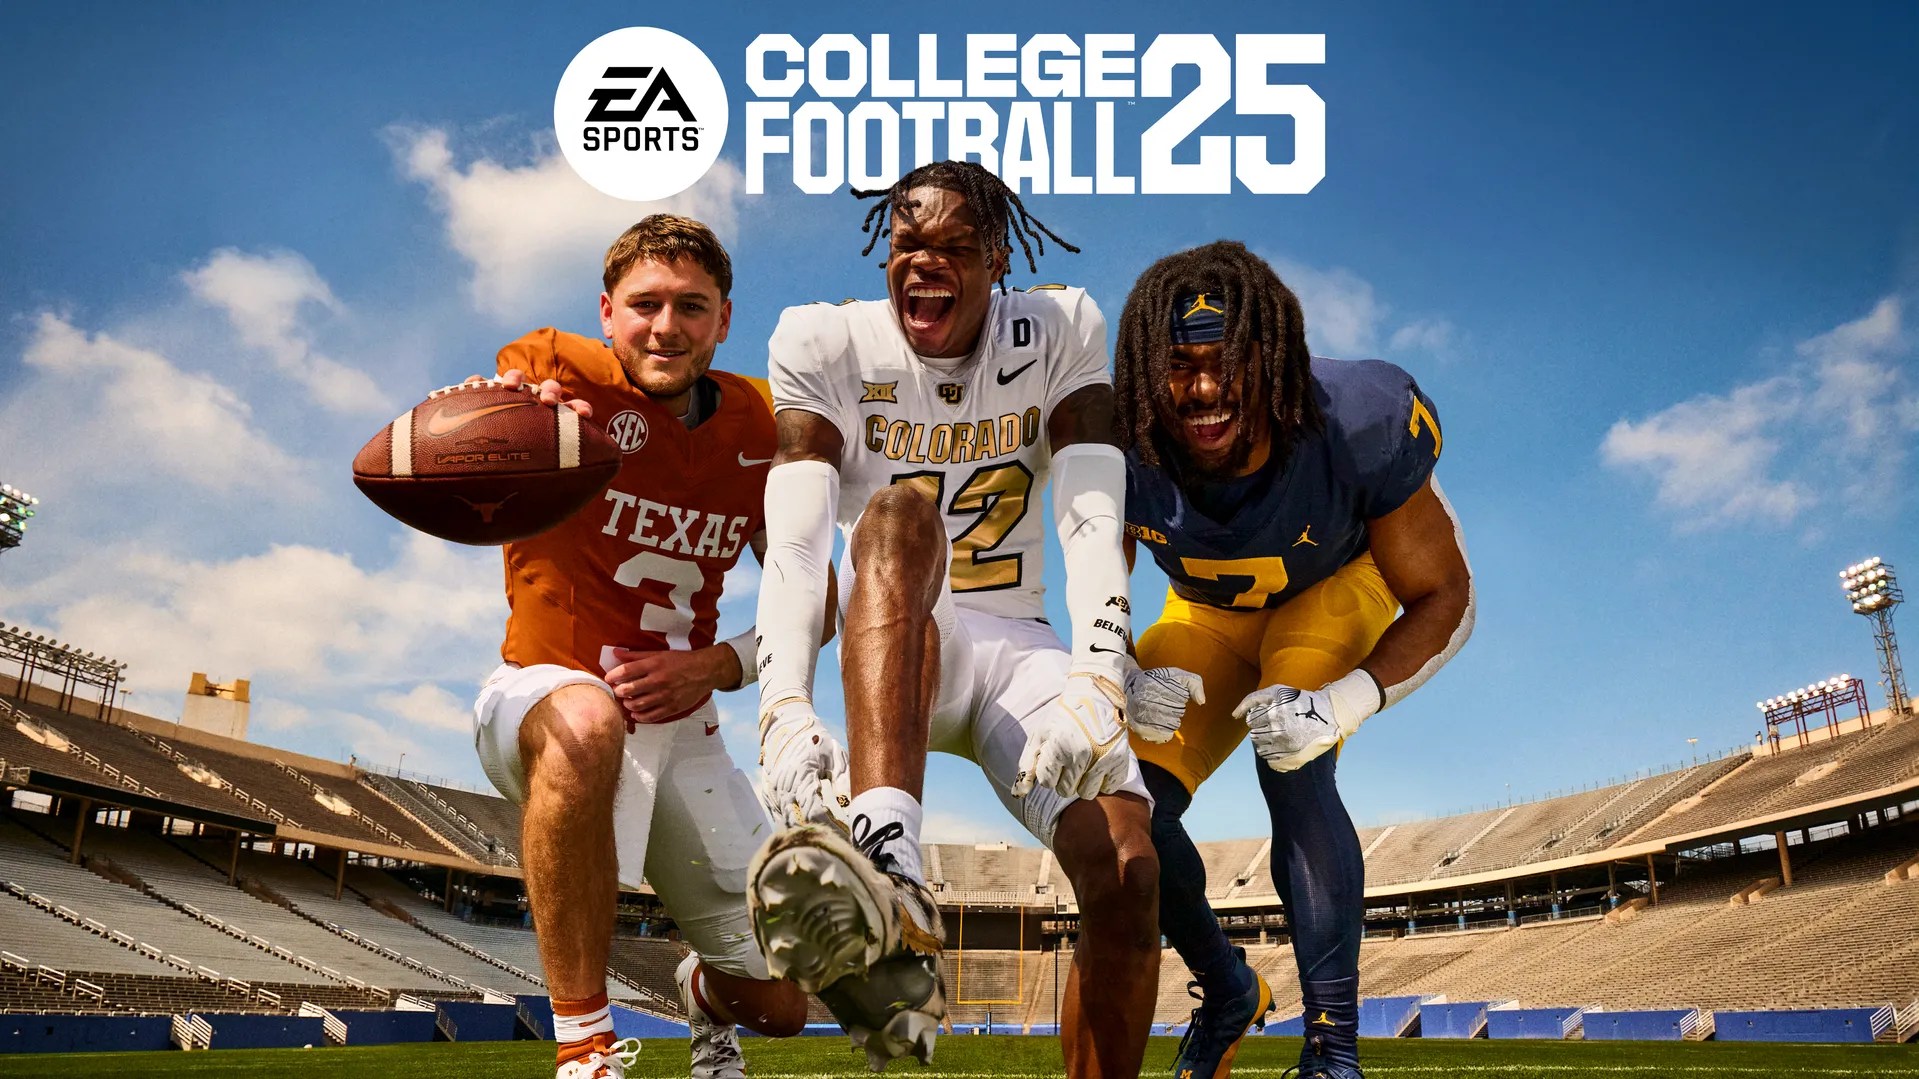 EA College Football 25 atinge um marco importante antes do lançamento oficial